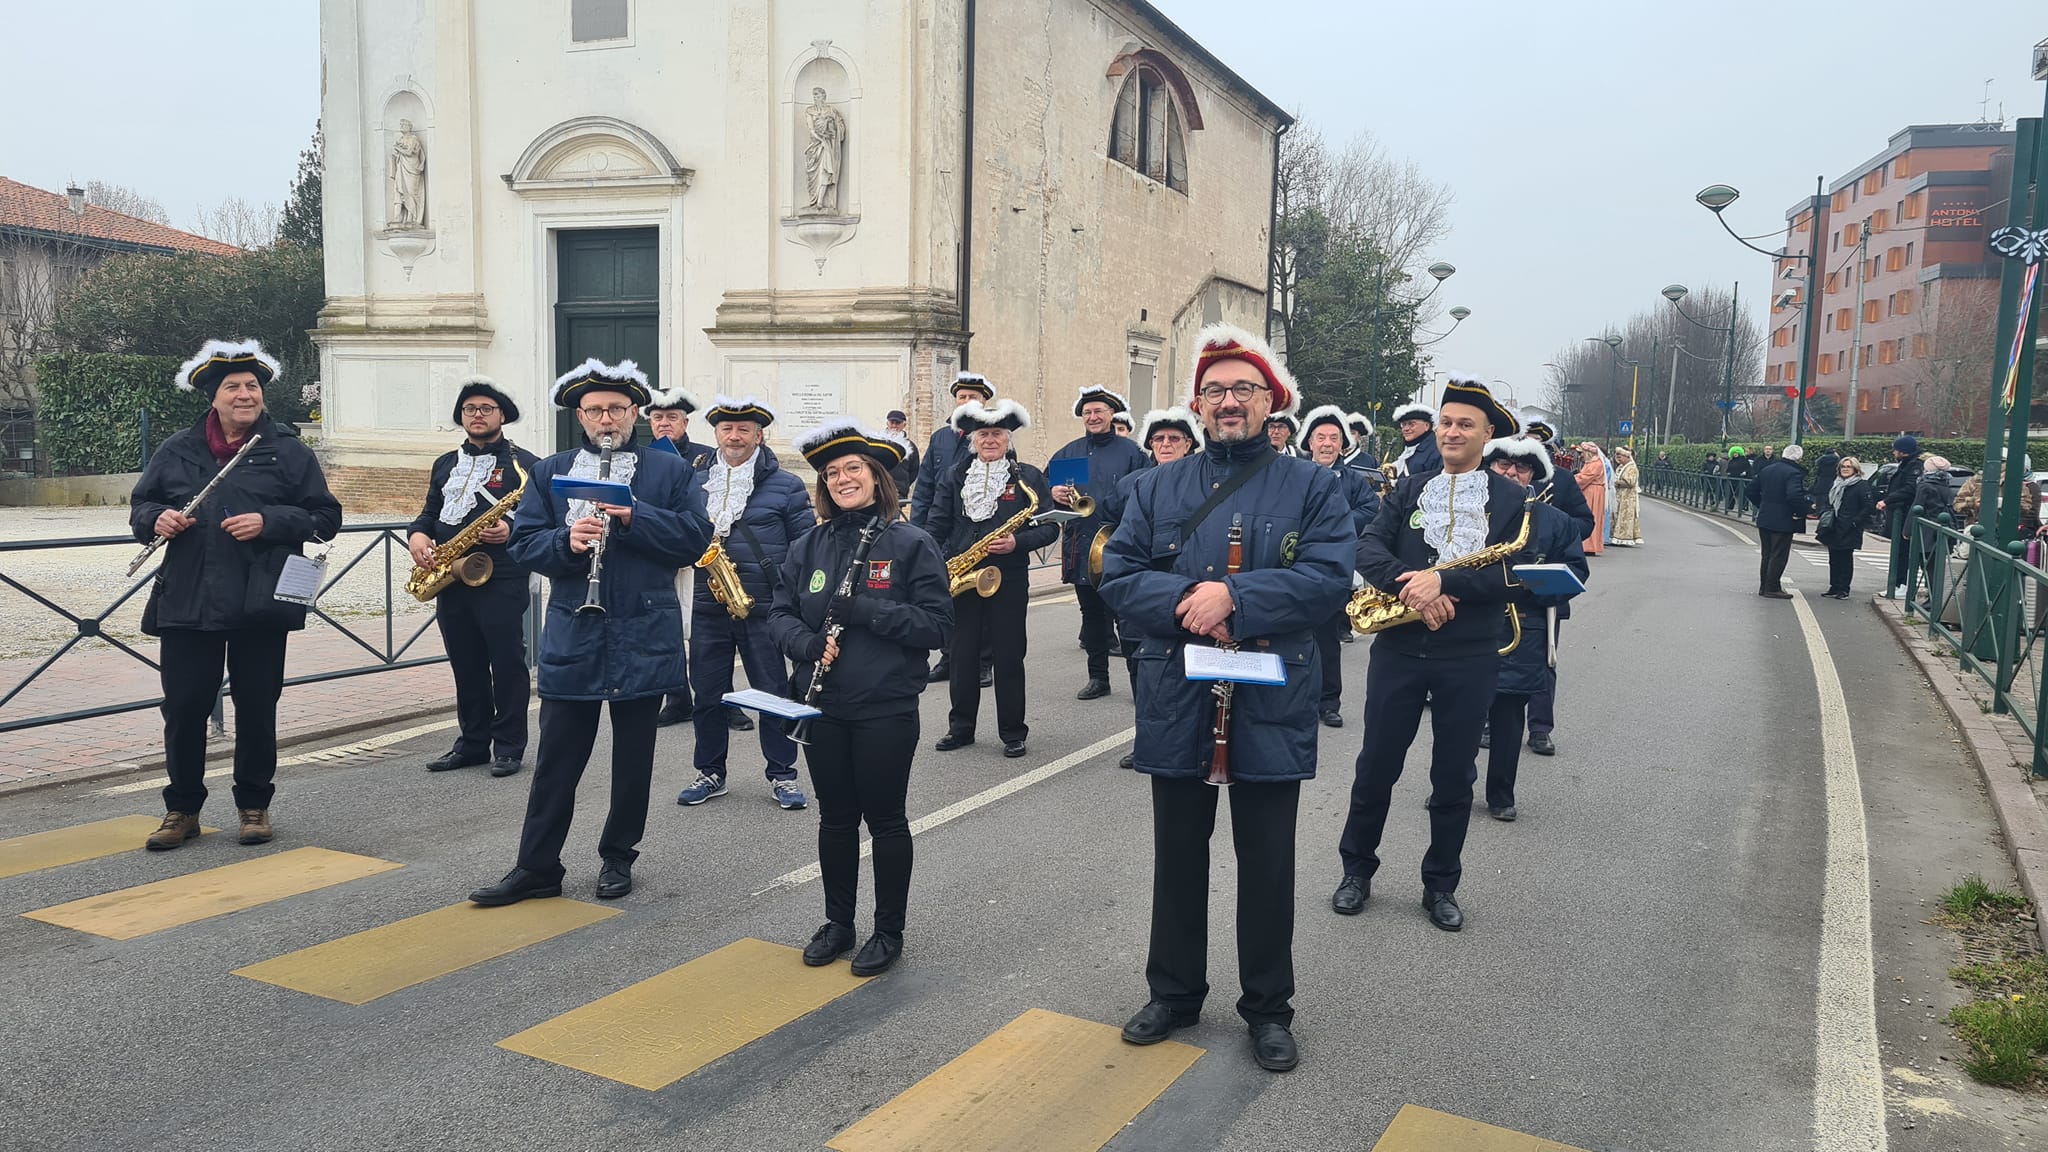 Banda musicale in posa sulla strada, davanti a una chiesa